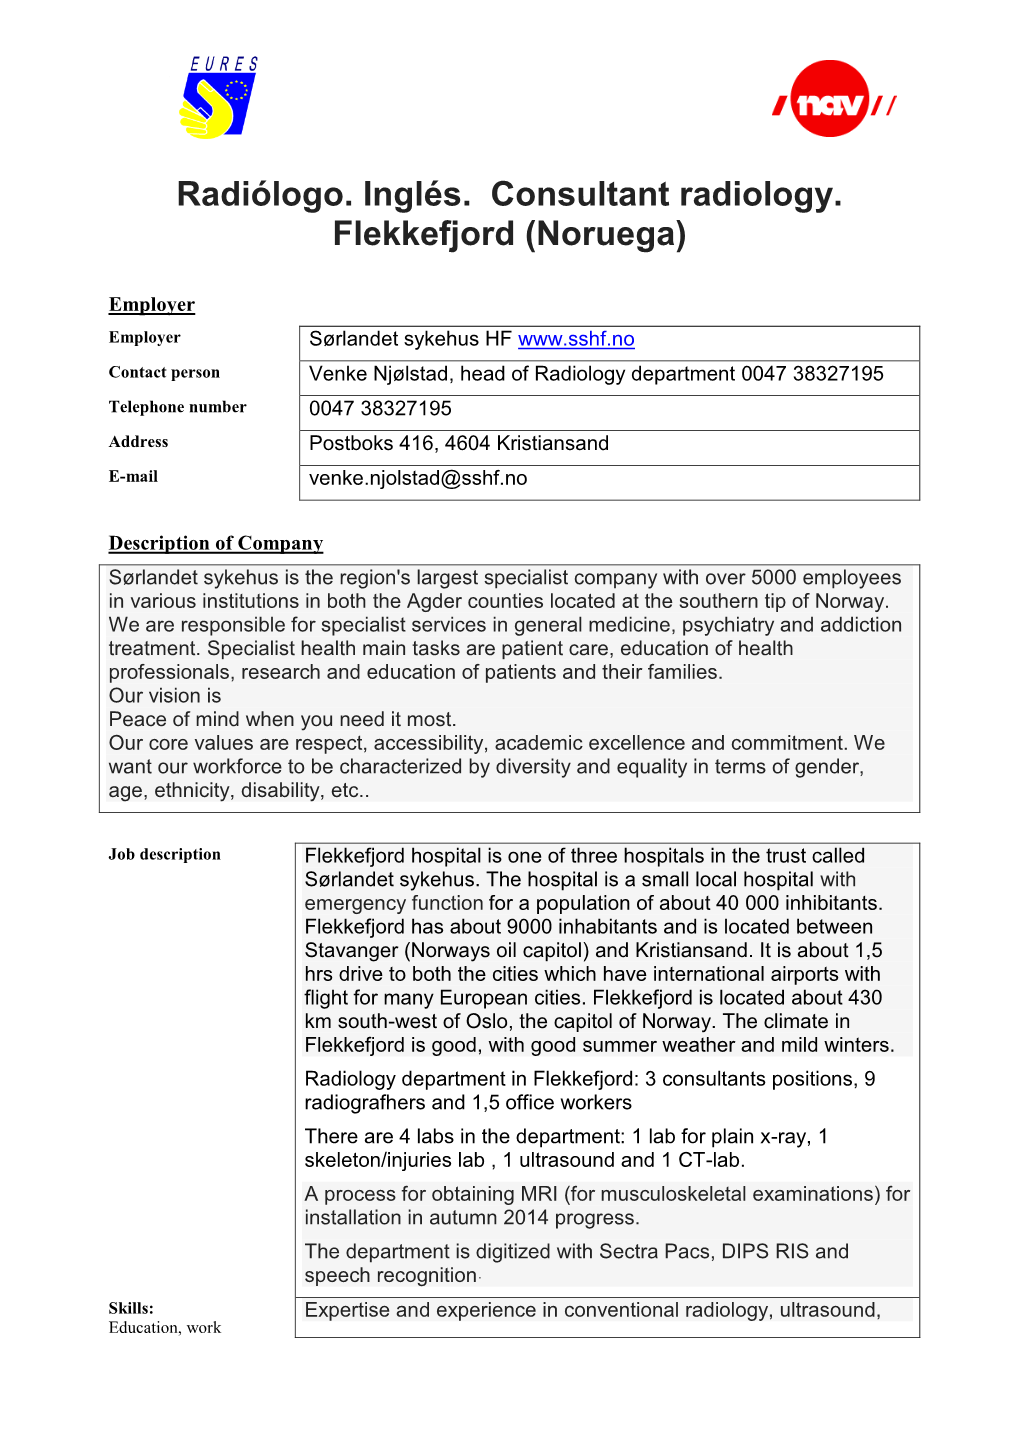 Radiólogo. Inglés. Consultant Radiology. Flekkefjord (Noruega)